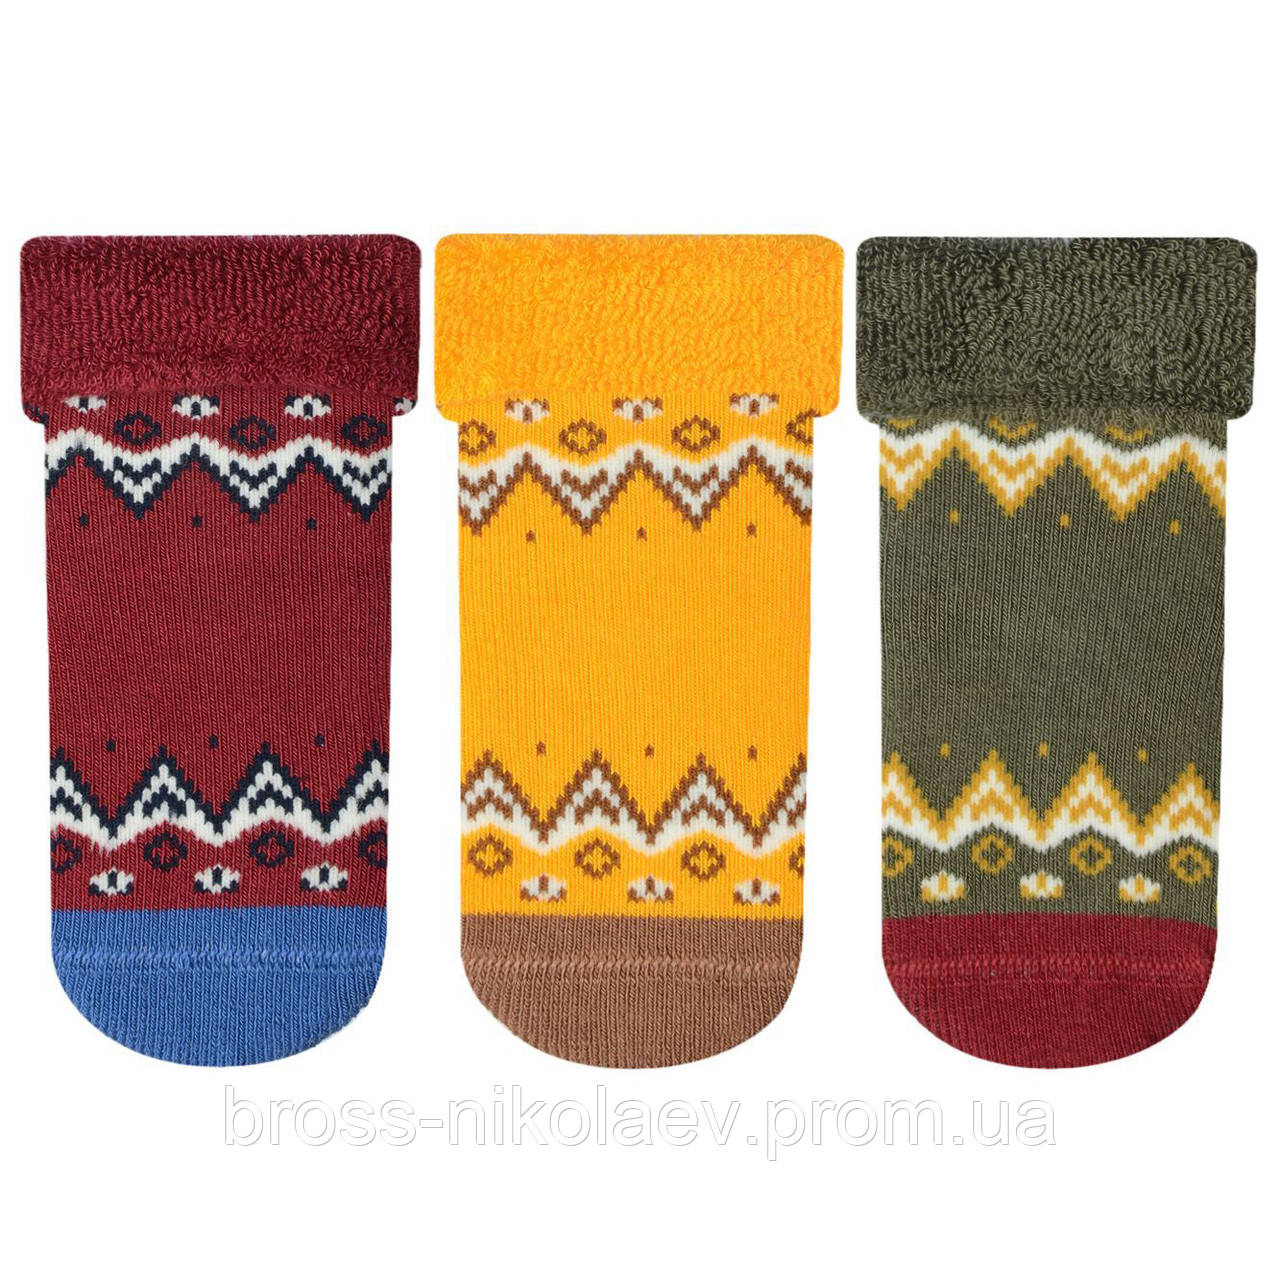 Дитячі махрові шкарпетки 0-6 міс зі стоперами для малюка теплі зимові носки махра для новонароджених BROSS